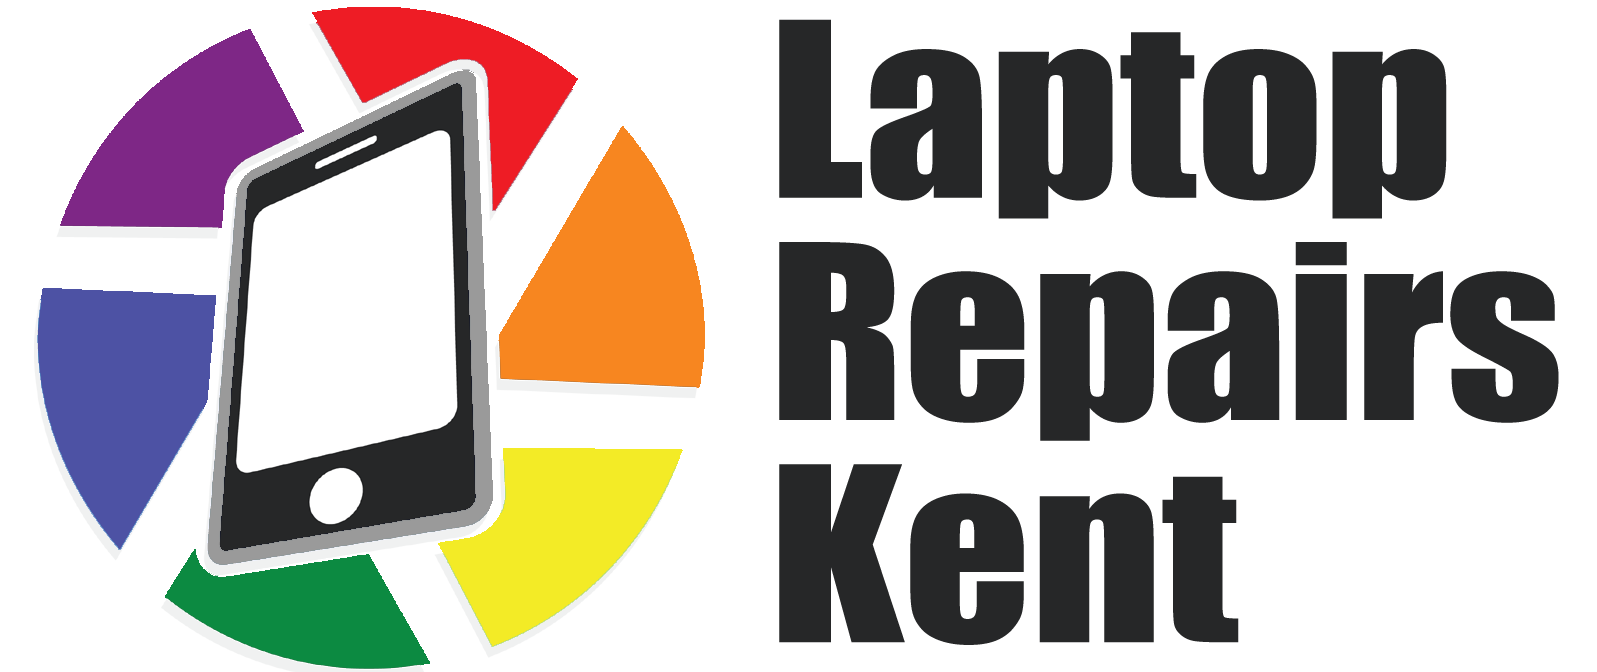 Laptop Repairs Kent